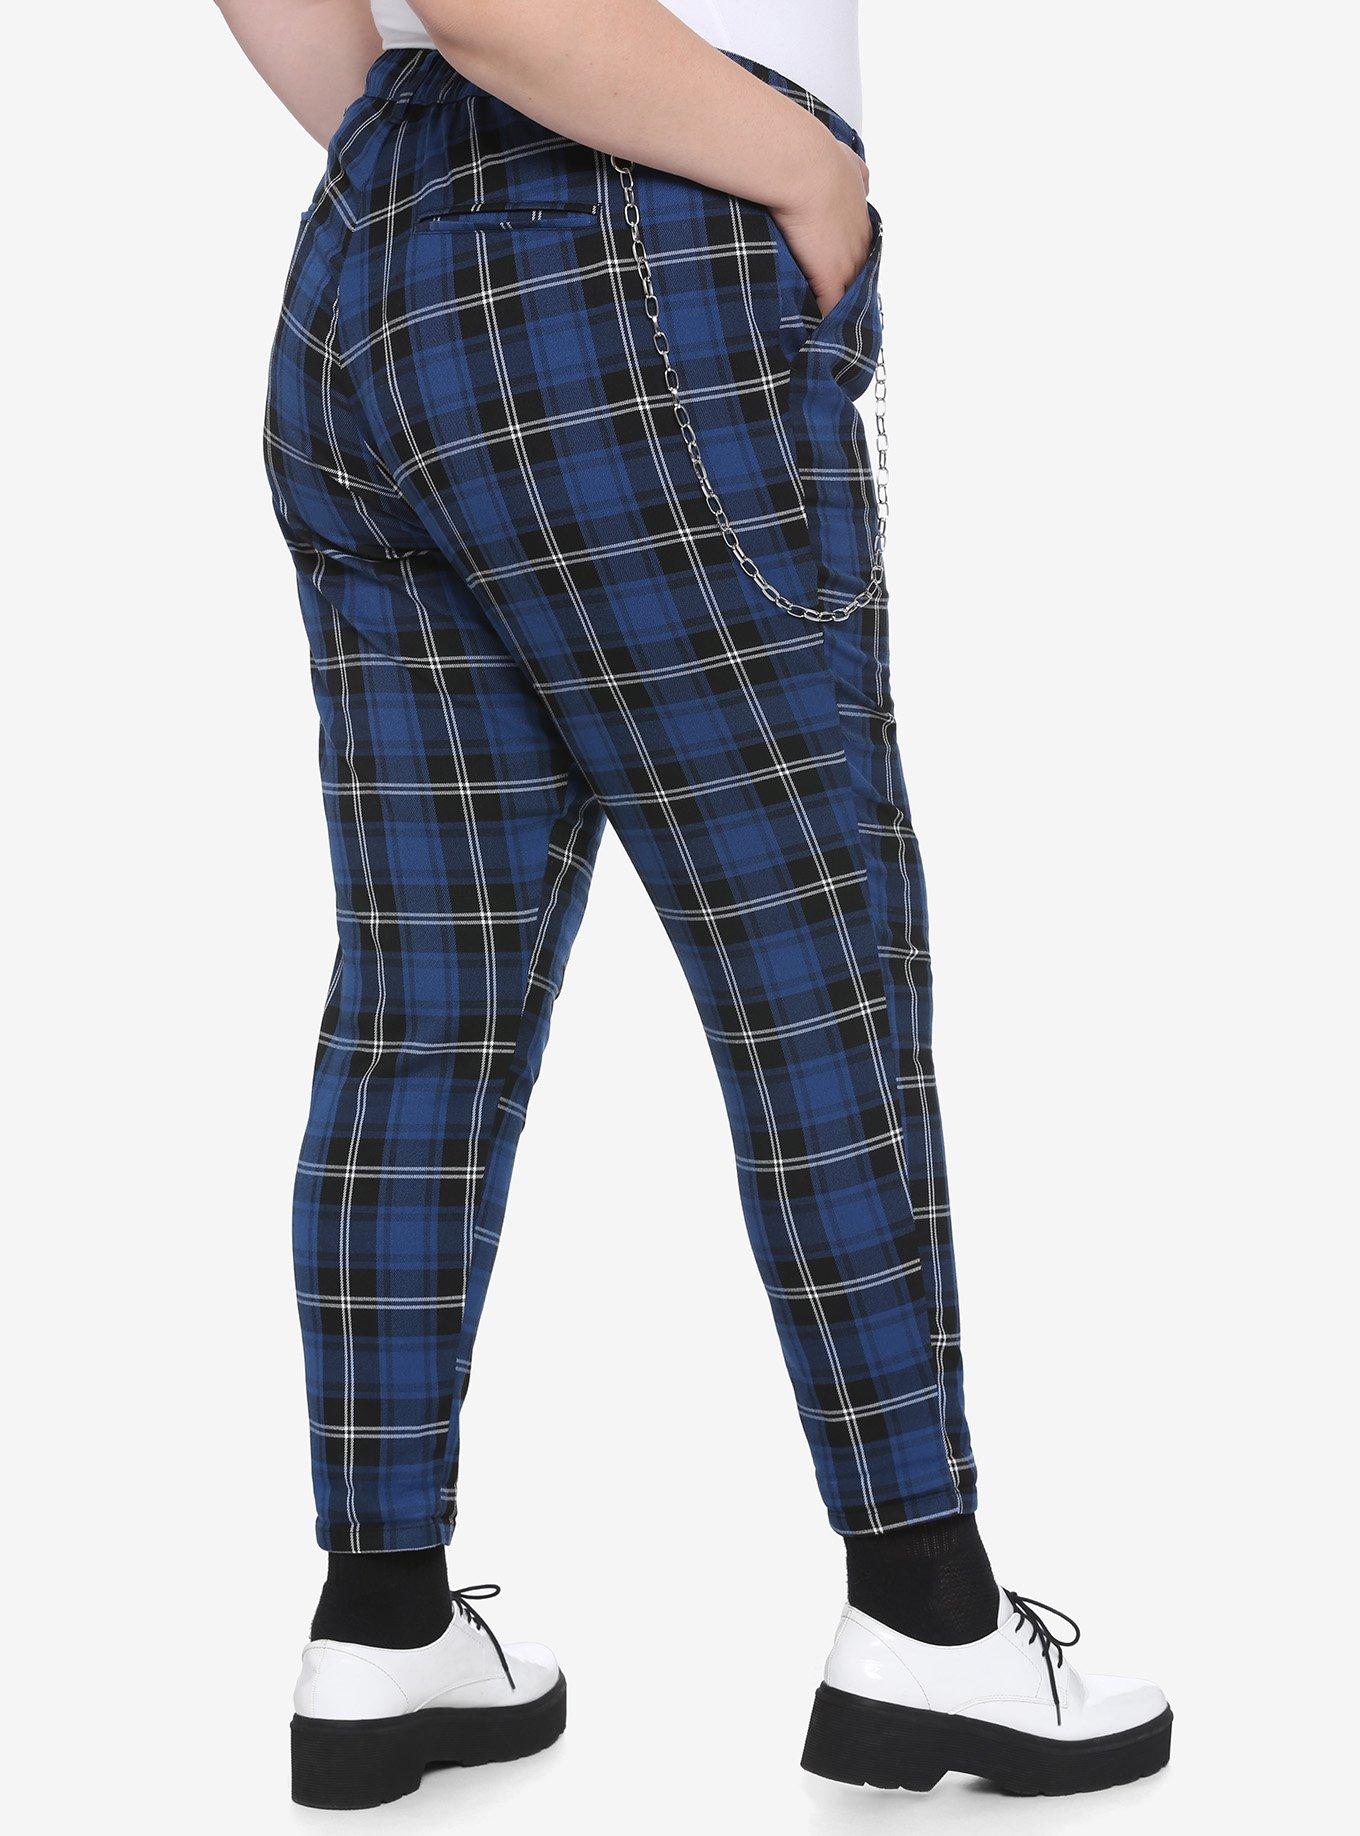 Blue Plaid Pants With Detachable Chain Plus Size, PLAID - BLUE, alternate